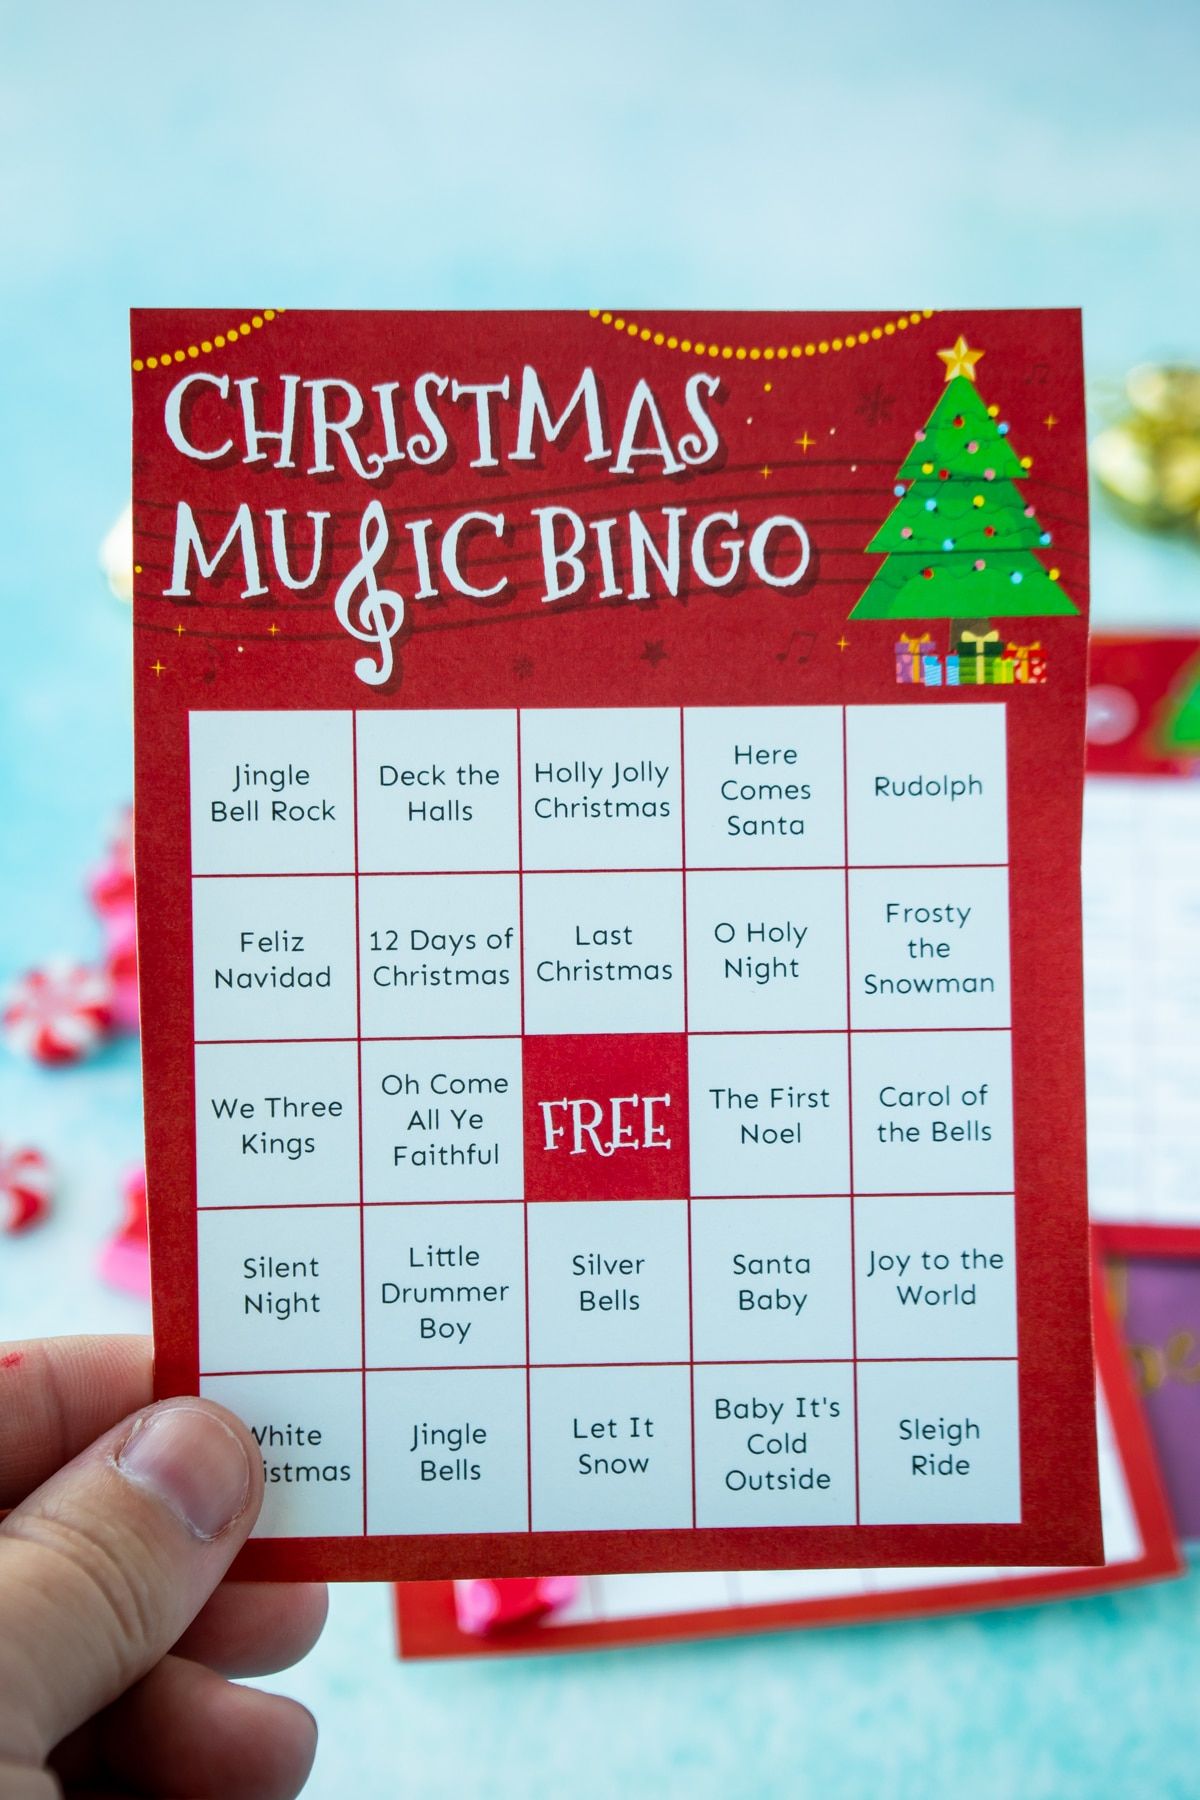 Mano sosteniendo una tarjeta de bingo de música navideña